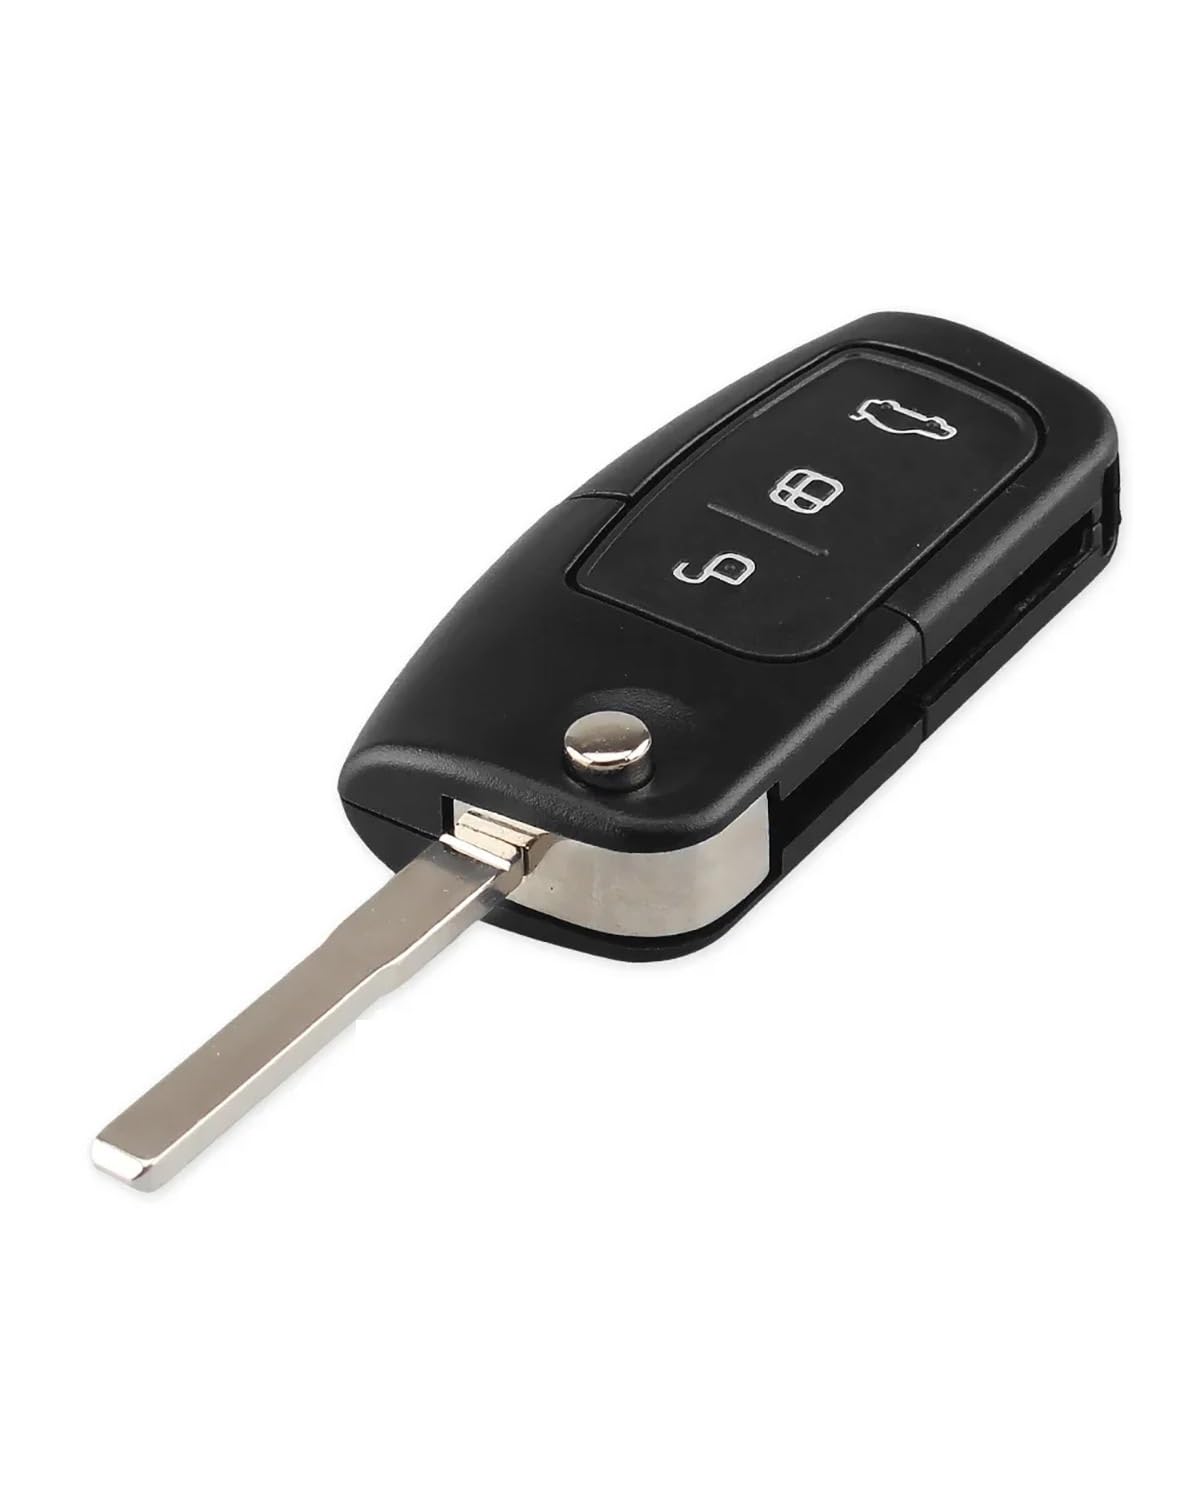 Funkschlüsseletui 3 Tasten Flip modifiziertes Autoschlüsselgehäuse Fernbedienung Schlüsselanhänger für Ford für Focus 2 3 Fiesta C Max Connect Ka Mondeo S Max Galaxy Autoschlüsseletui(HU101) von MXDDWLKJ